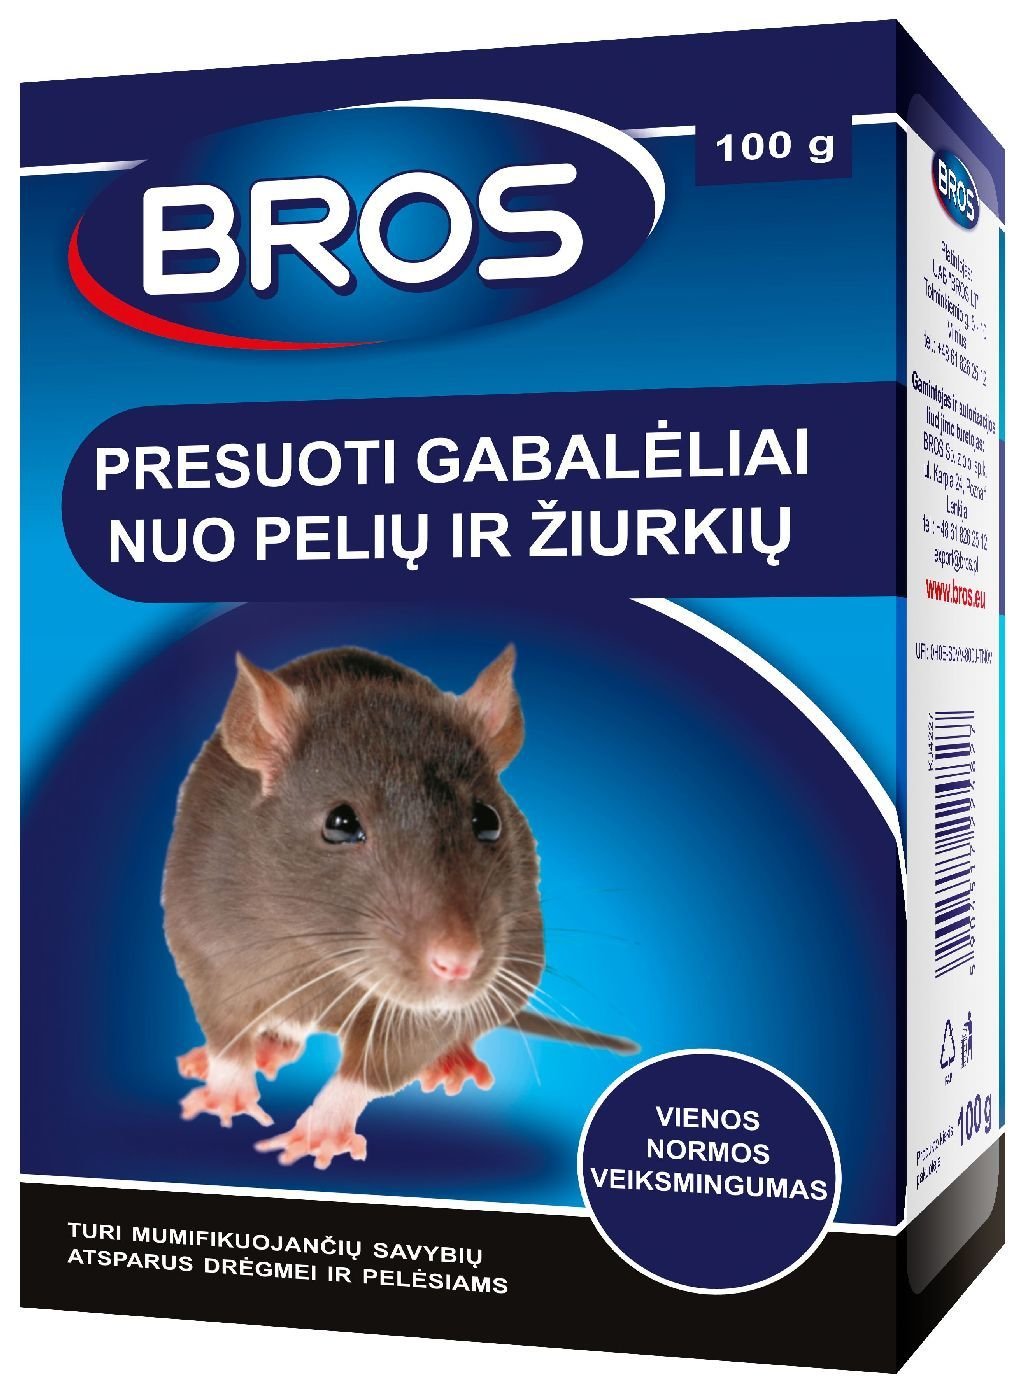 BROS Gabalėliai nuo pelių ir žiurkių 100g - ermitazas.lt